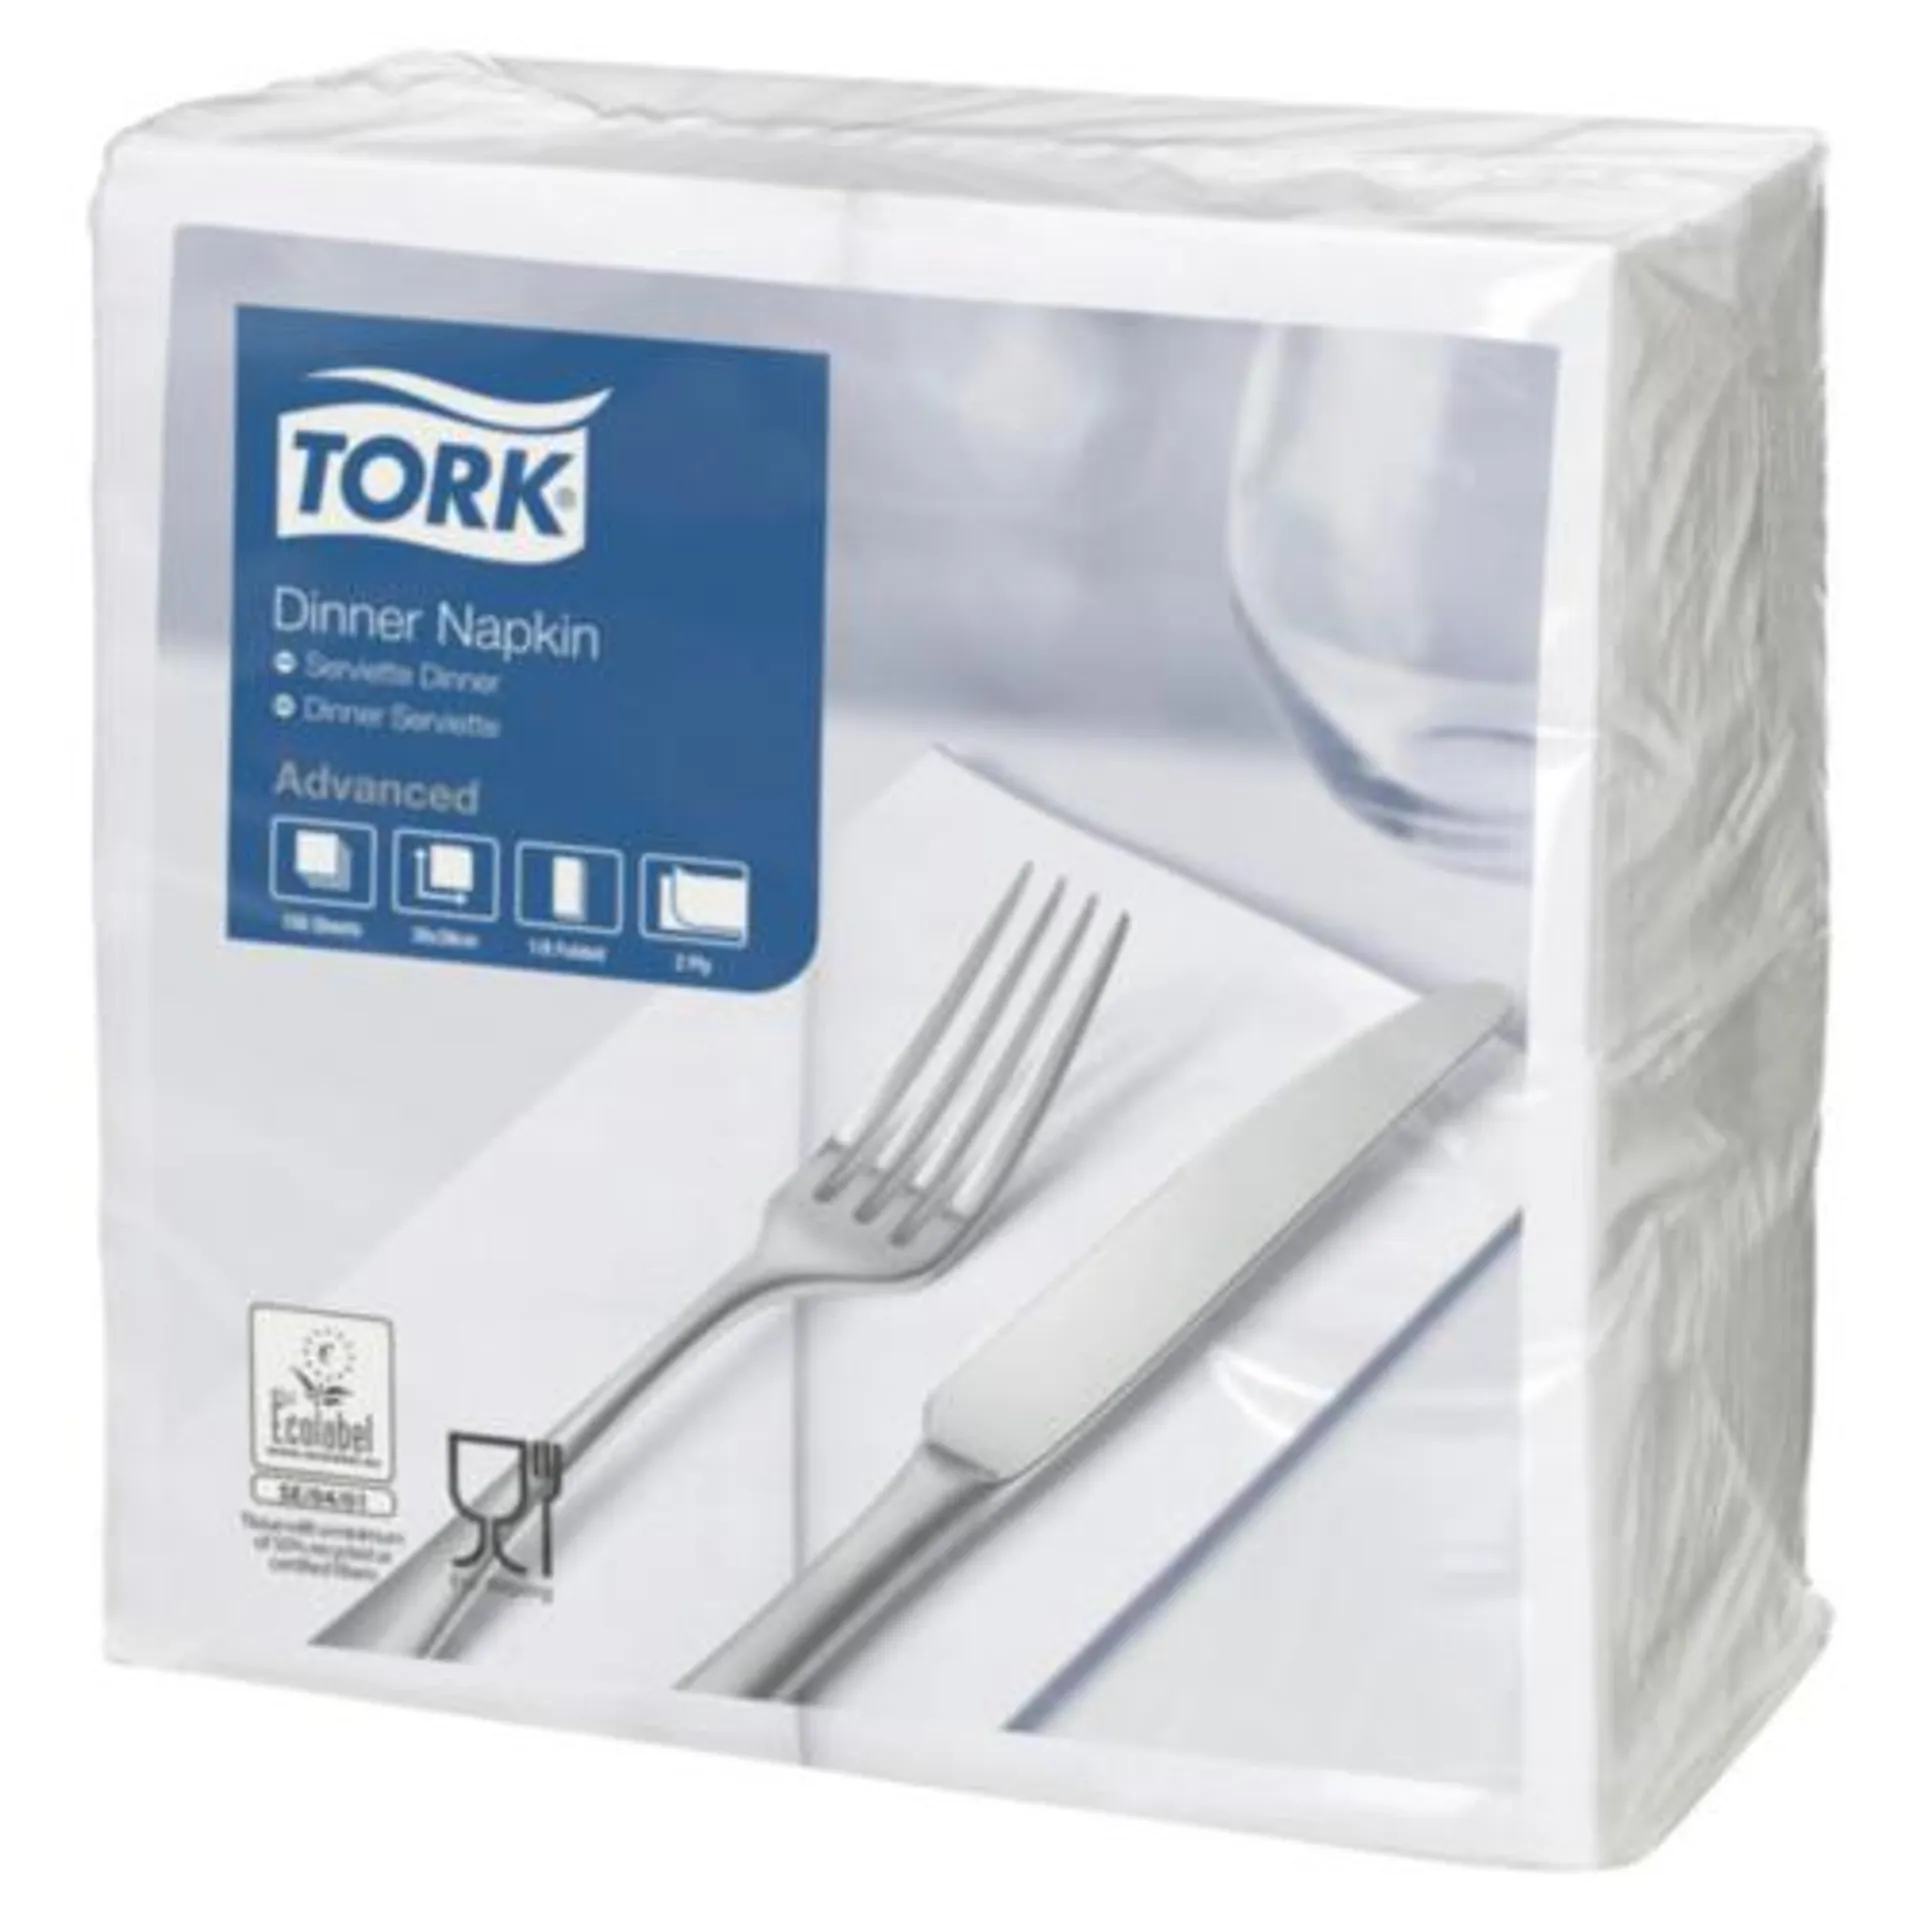 Tork Dinner Napkin White 2 Ply 8 Fold 39x39cm